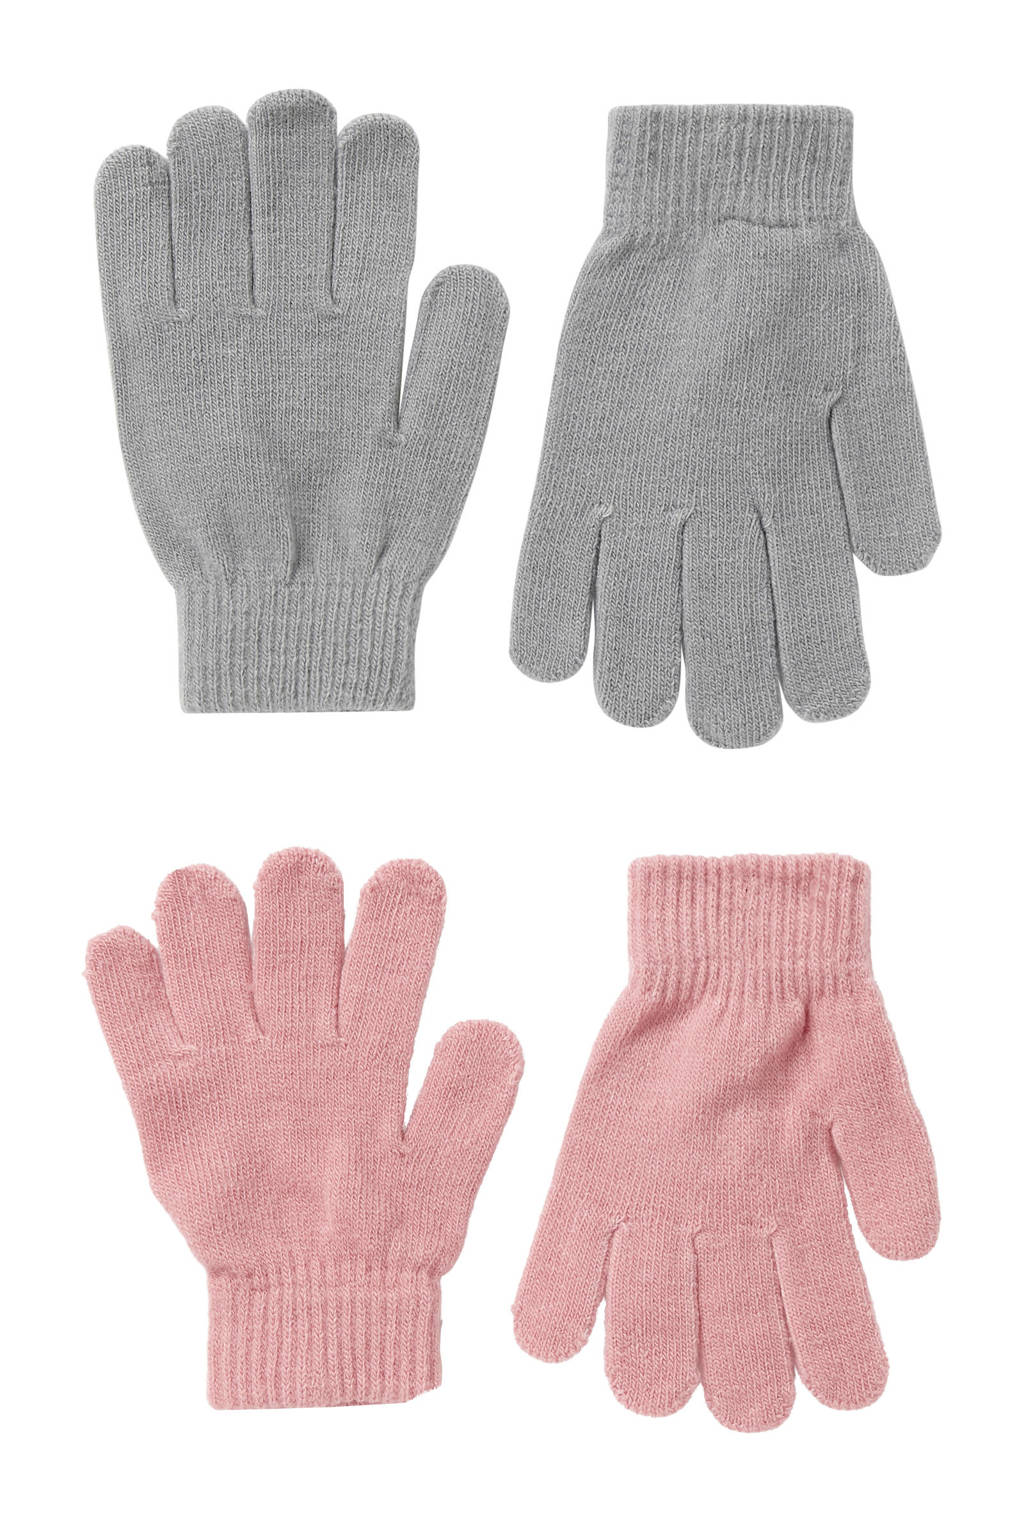 Sarlini handschoenen - set van 2 grijs/roze, Grijs/roze